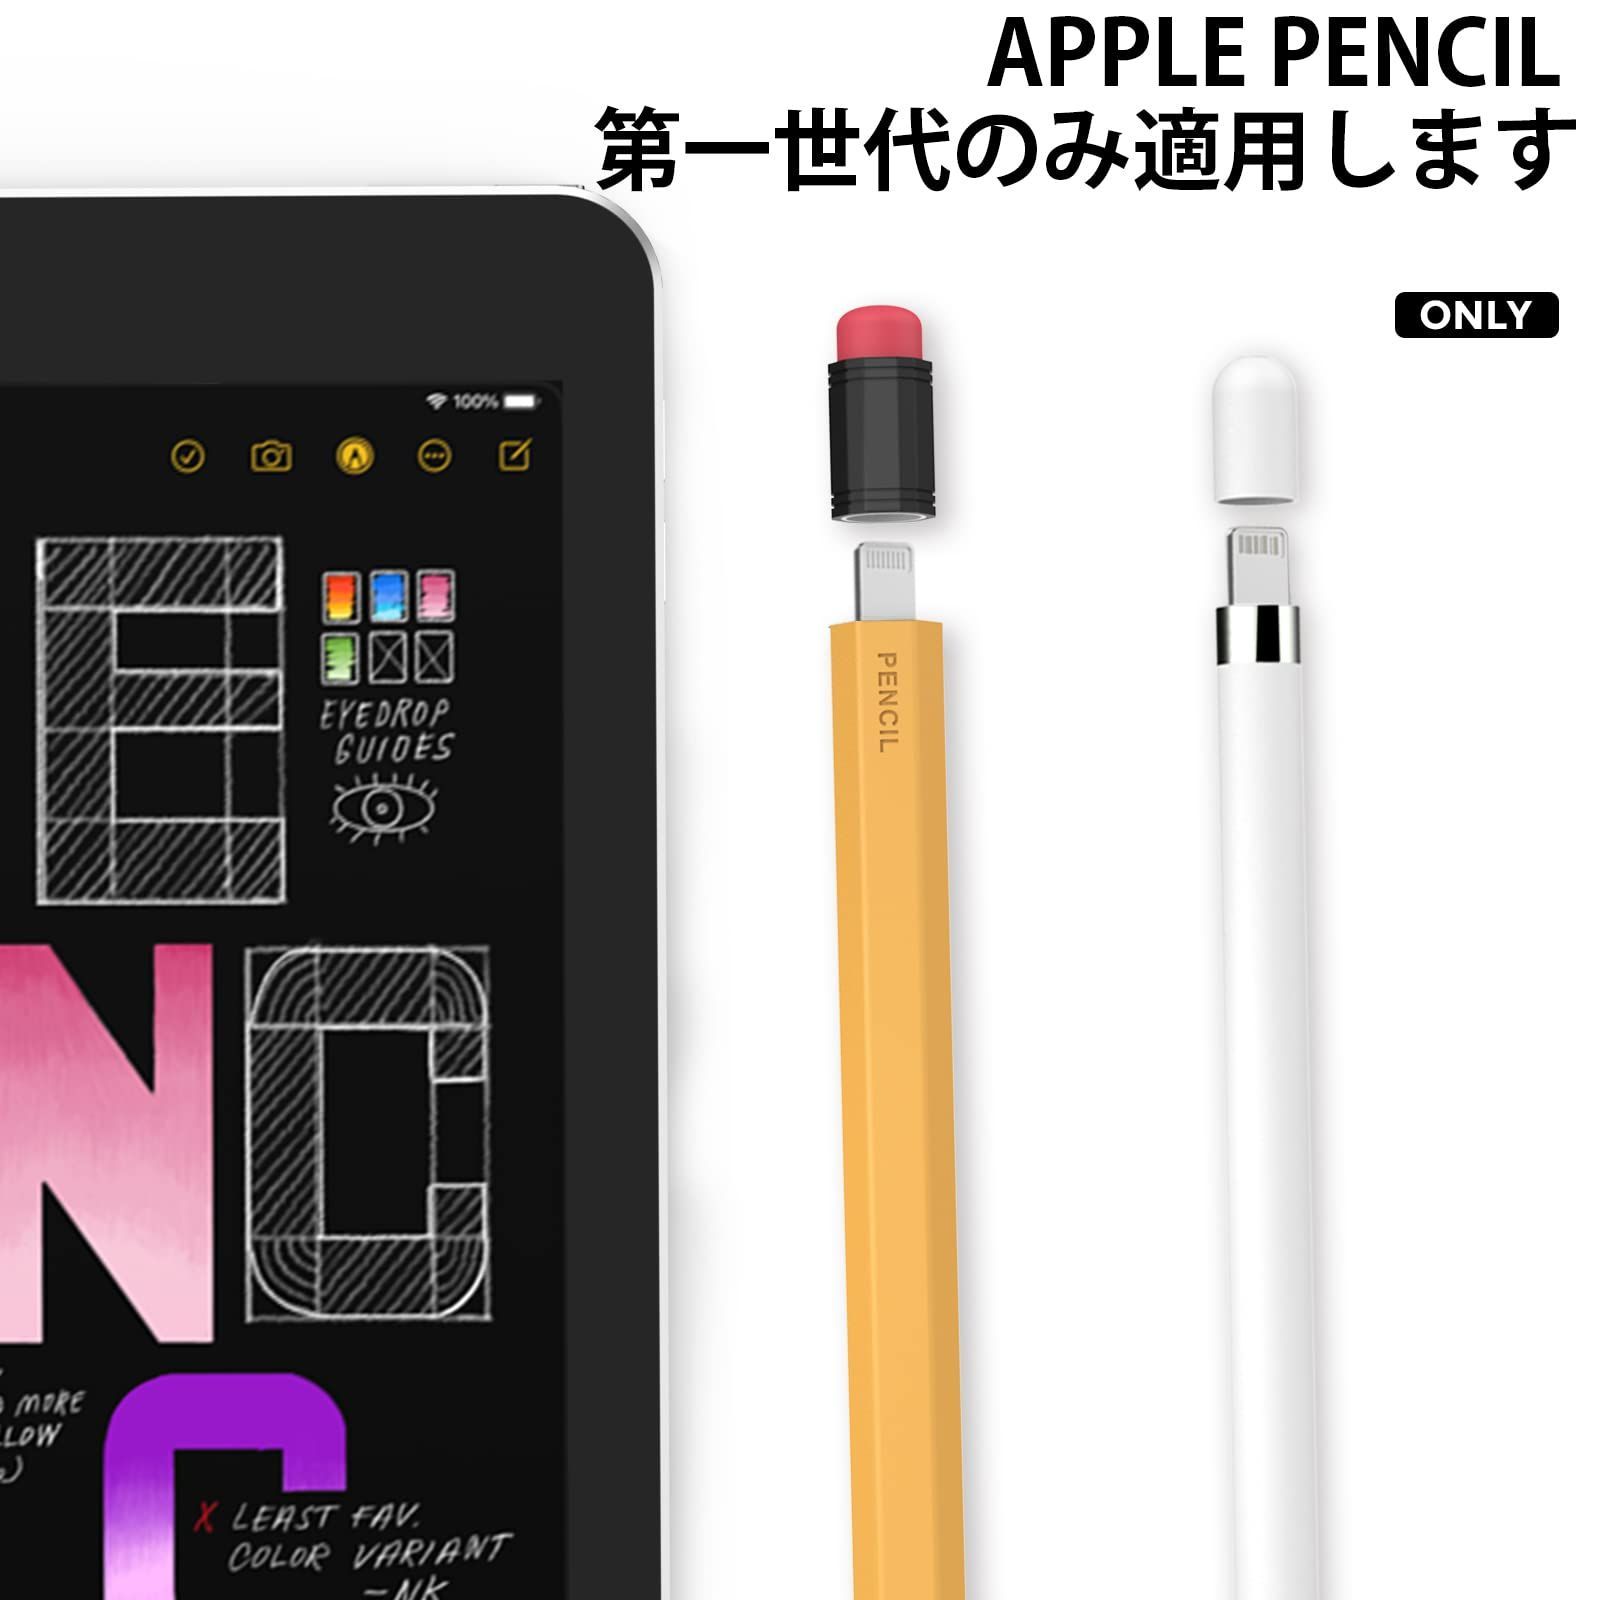 新着商品】鉛筆レトロデザイン 第一世代用シリコン保護ケース 柔らかなシリコン材質 Pencil Apple Pencil Apple 初代に適用  AhaStyle (イエロー) ブレイブストア メルカリ